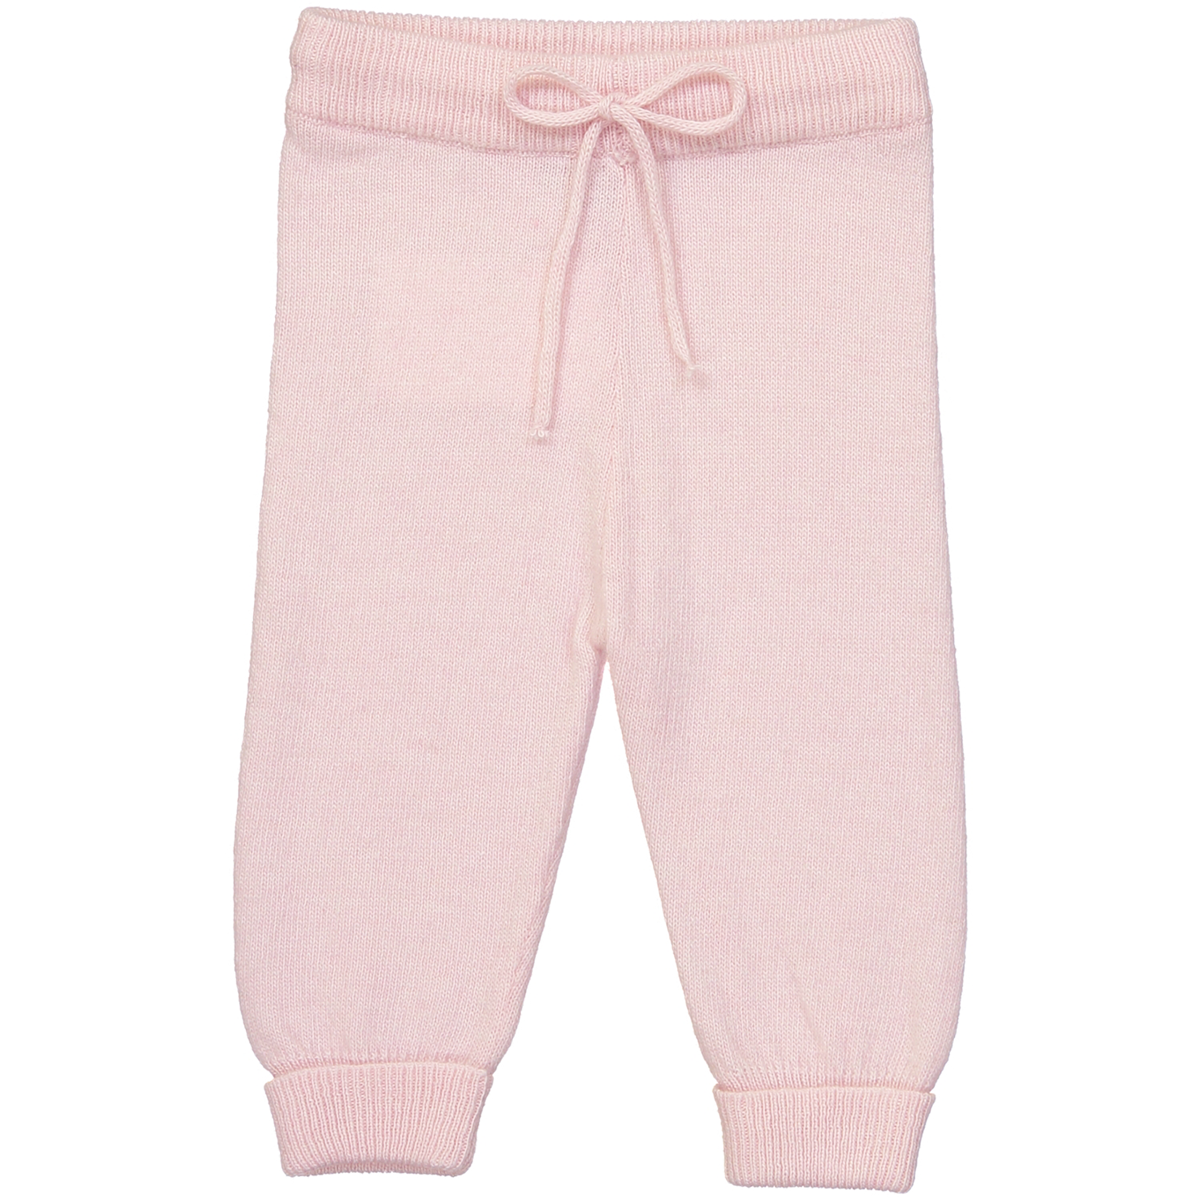 Pantalon bébé rose blush en laine